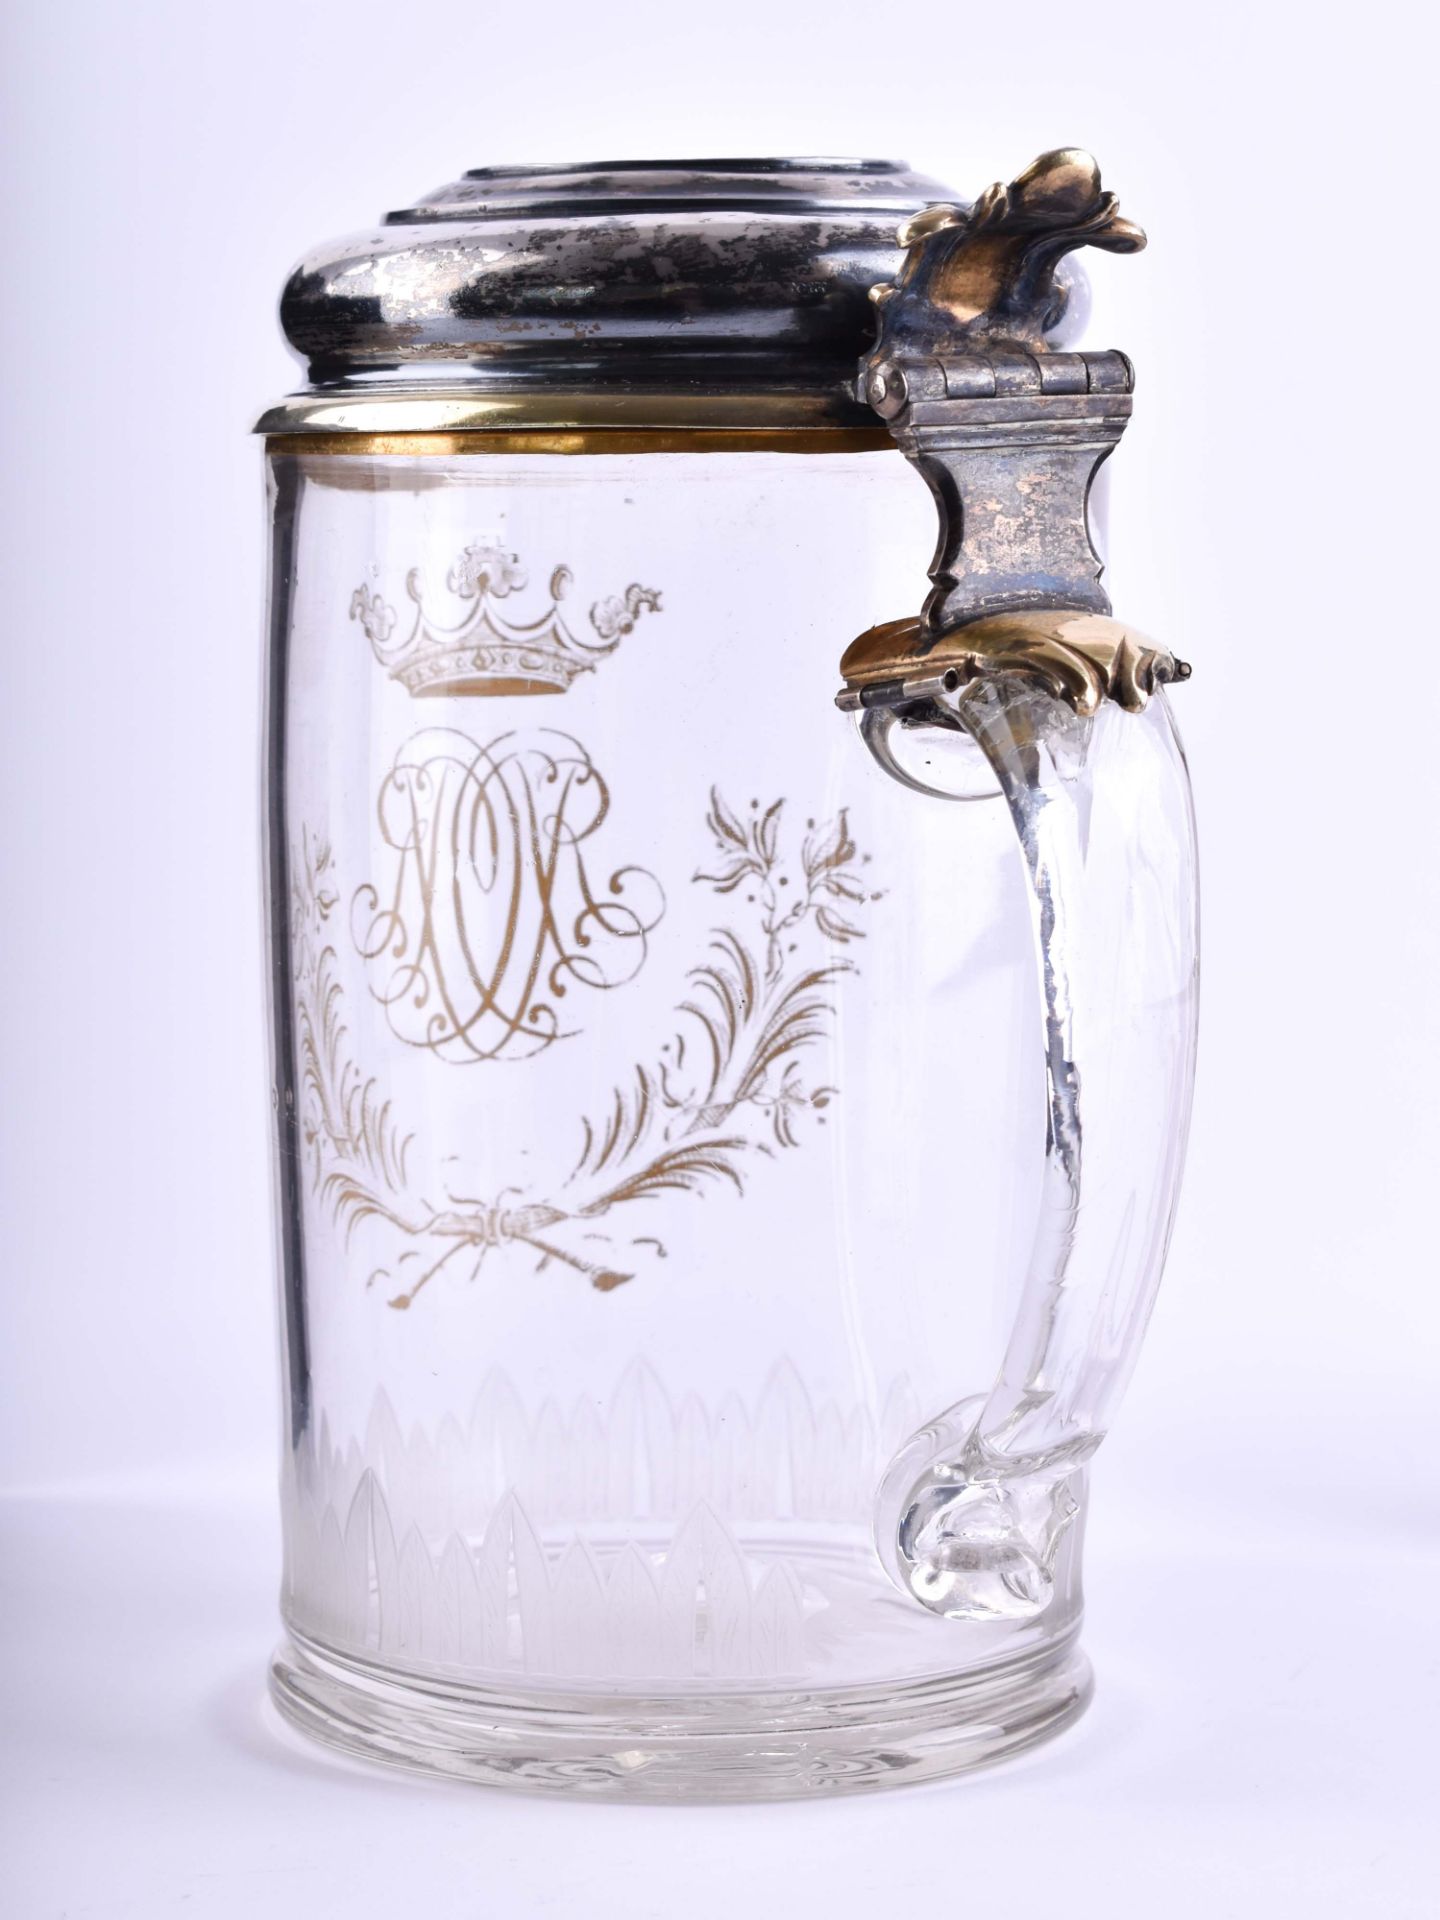 Wedding jug 17th century - Image 4 of 7